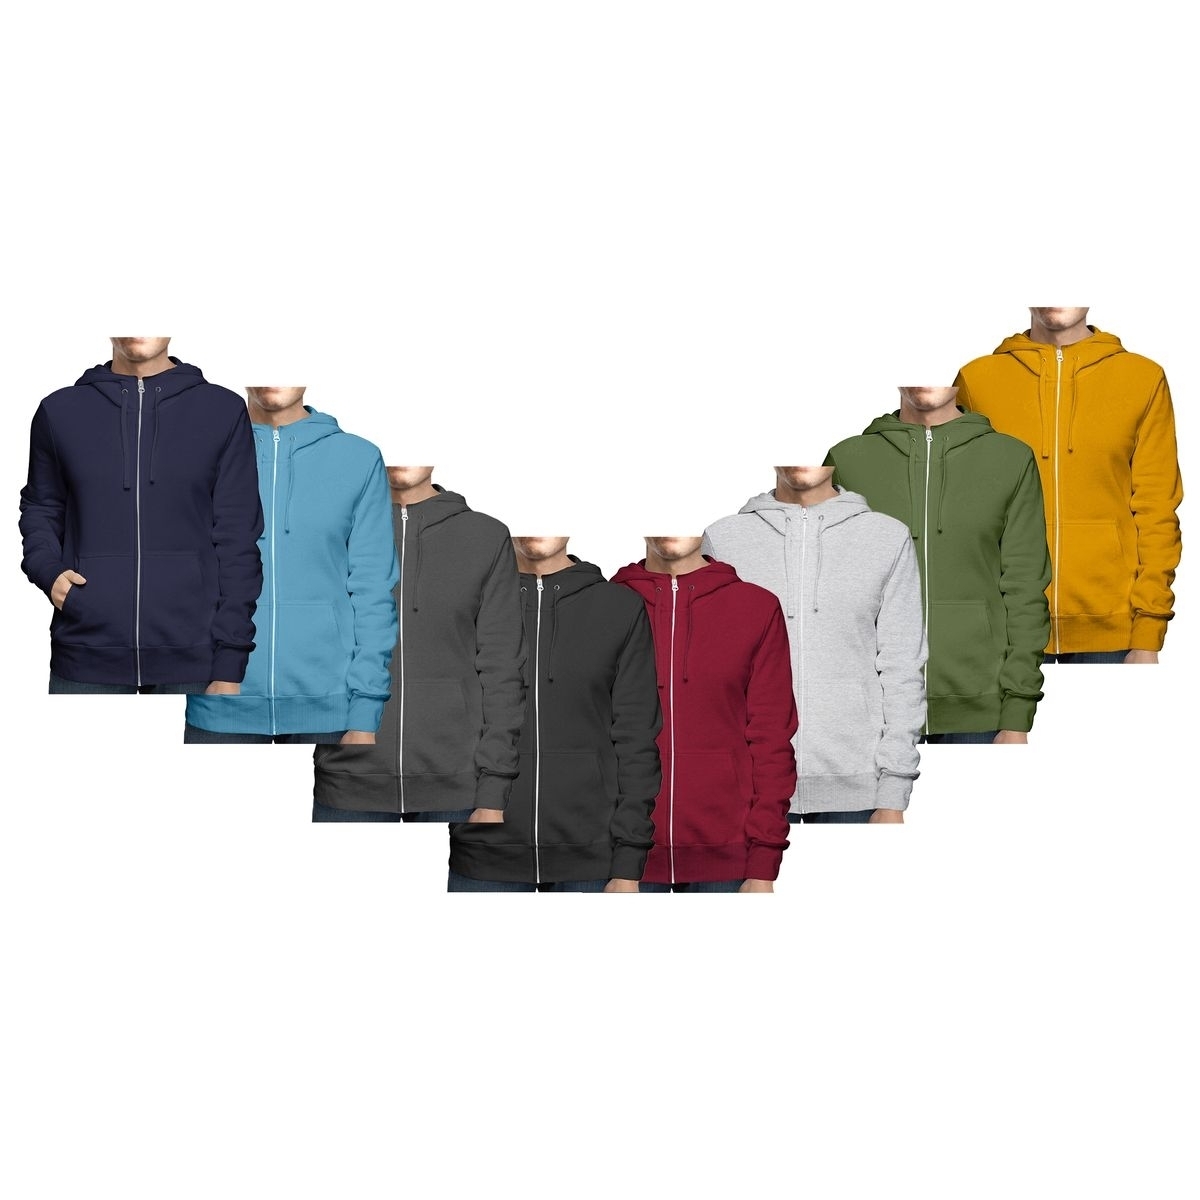 Men's Winter Warm Cozy Full Zip-Up Fleece Lined Soft Hoodie Sweatshirt - Black, X-large